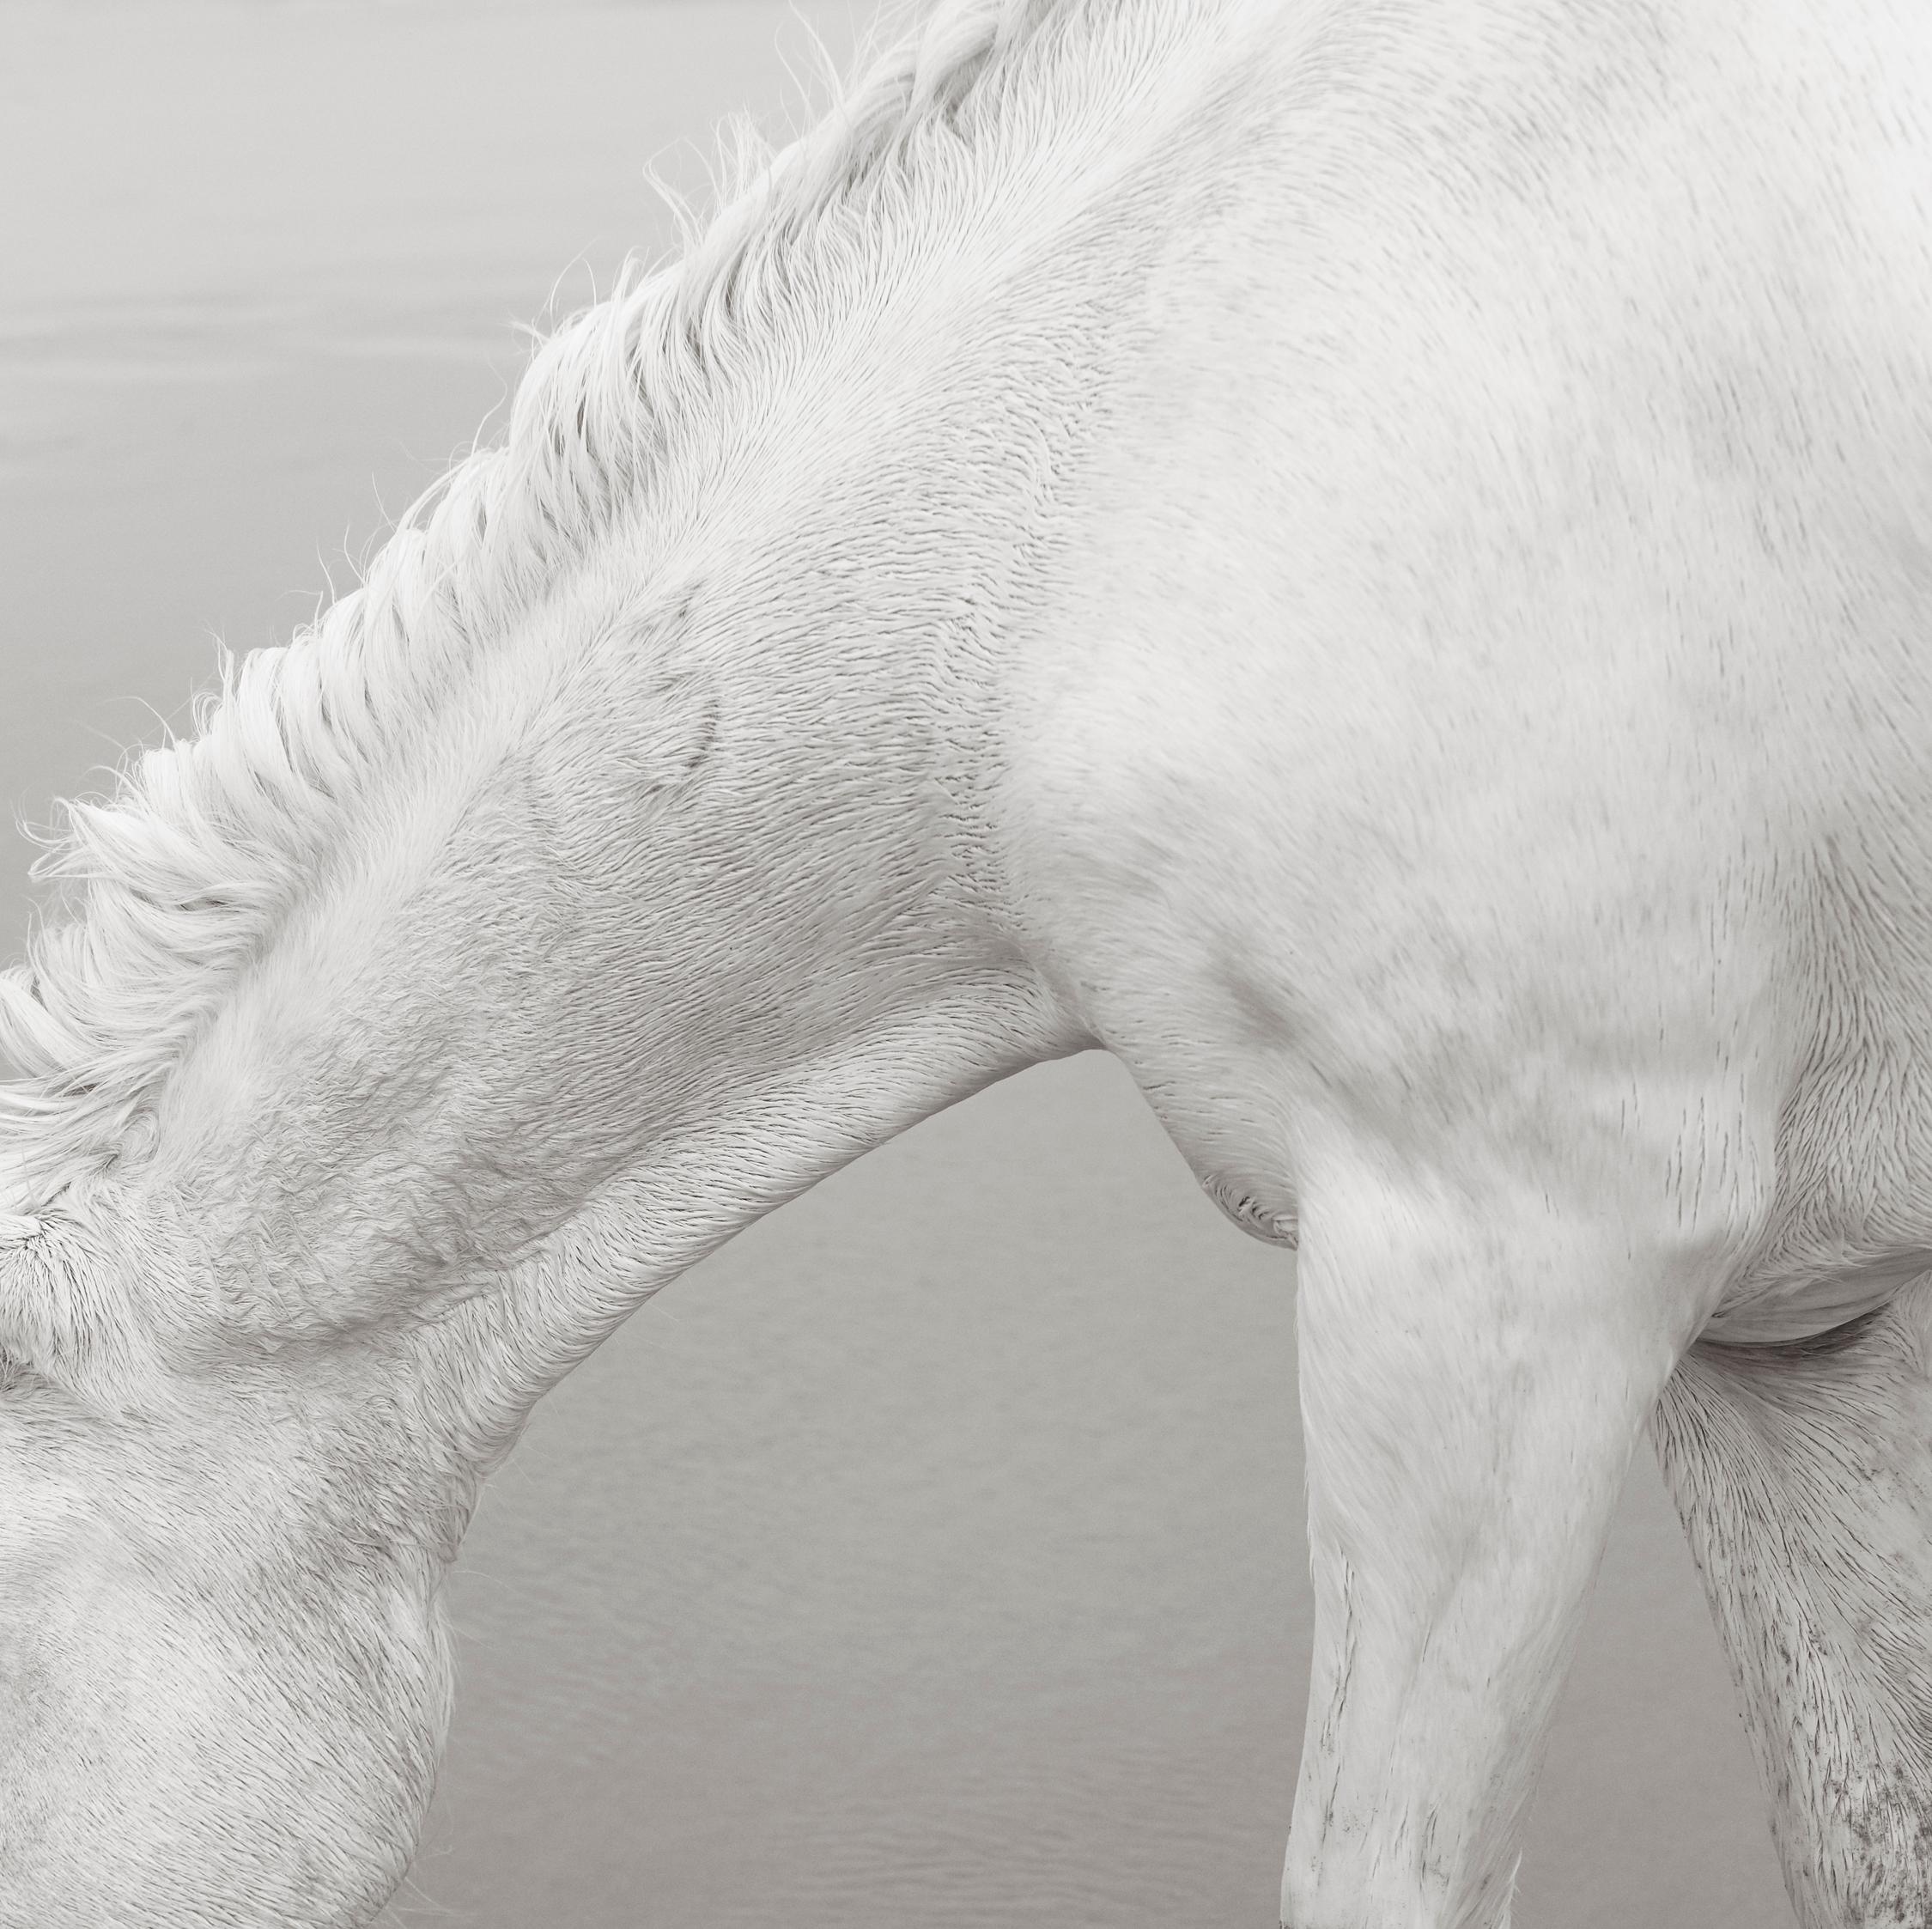 Black and White Photograph Drew Doggett - Le beau, délicat et fort col d'un cheval de Camargue entièrement blanc avec un b